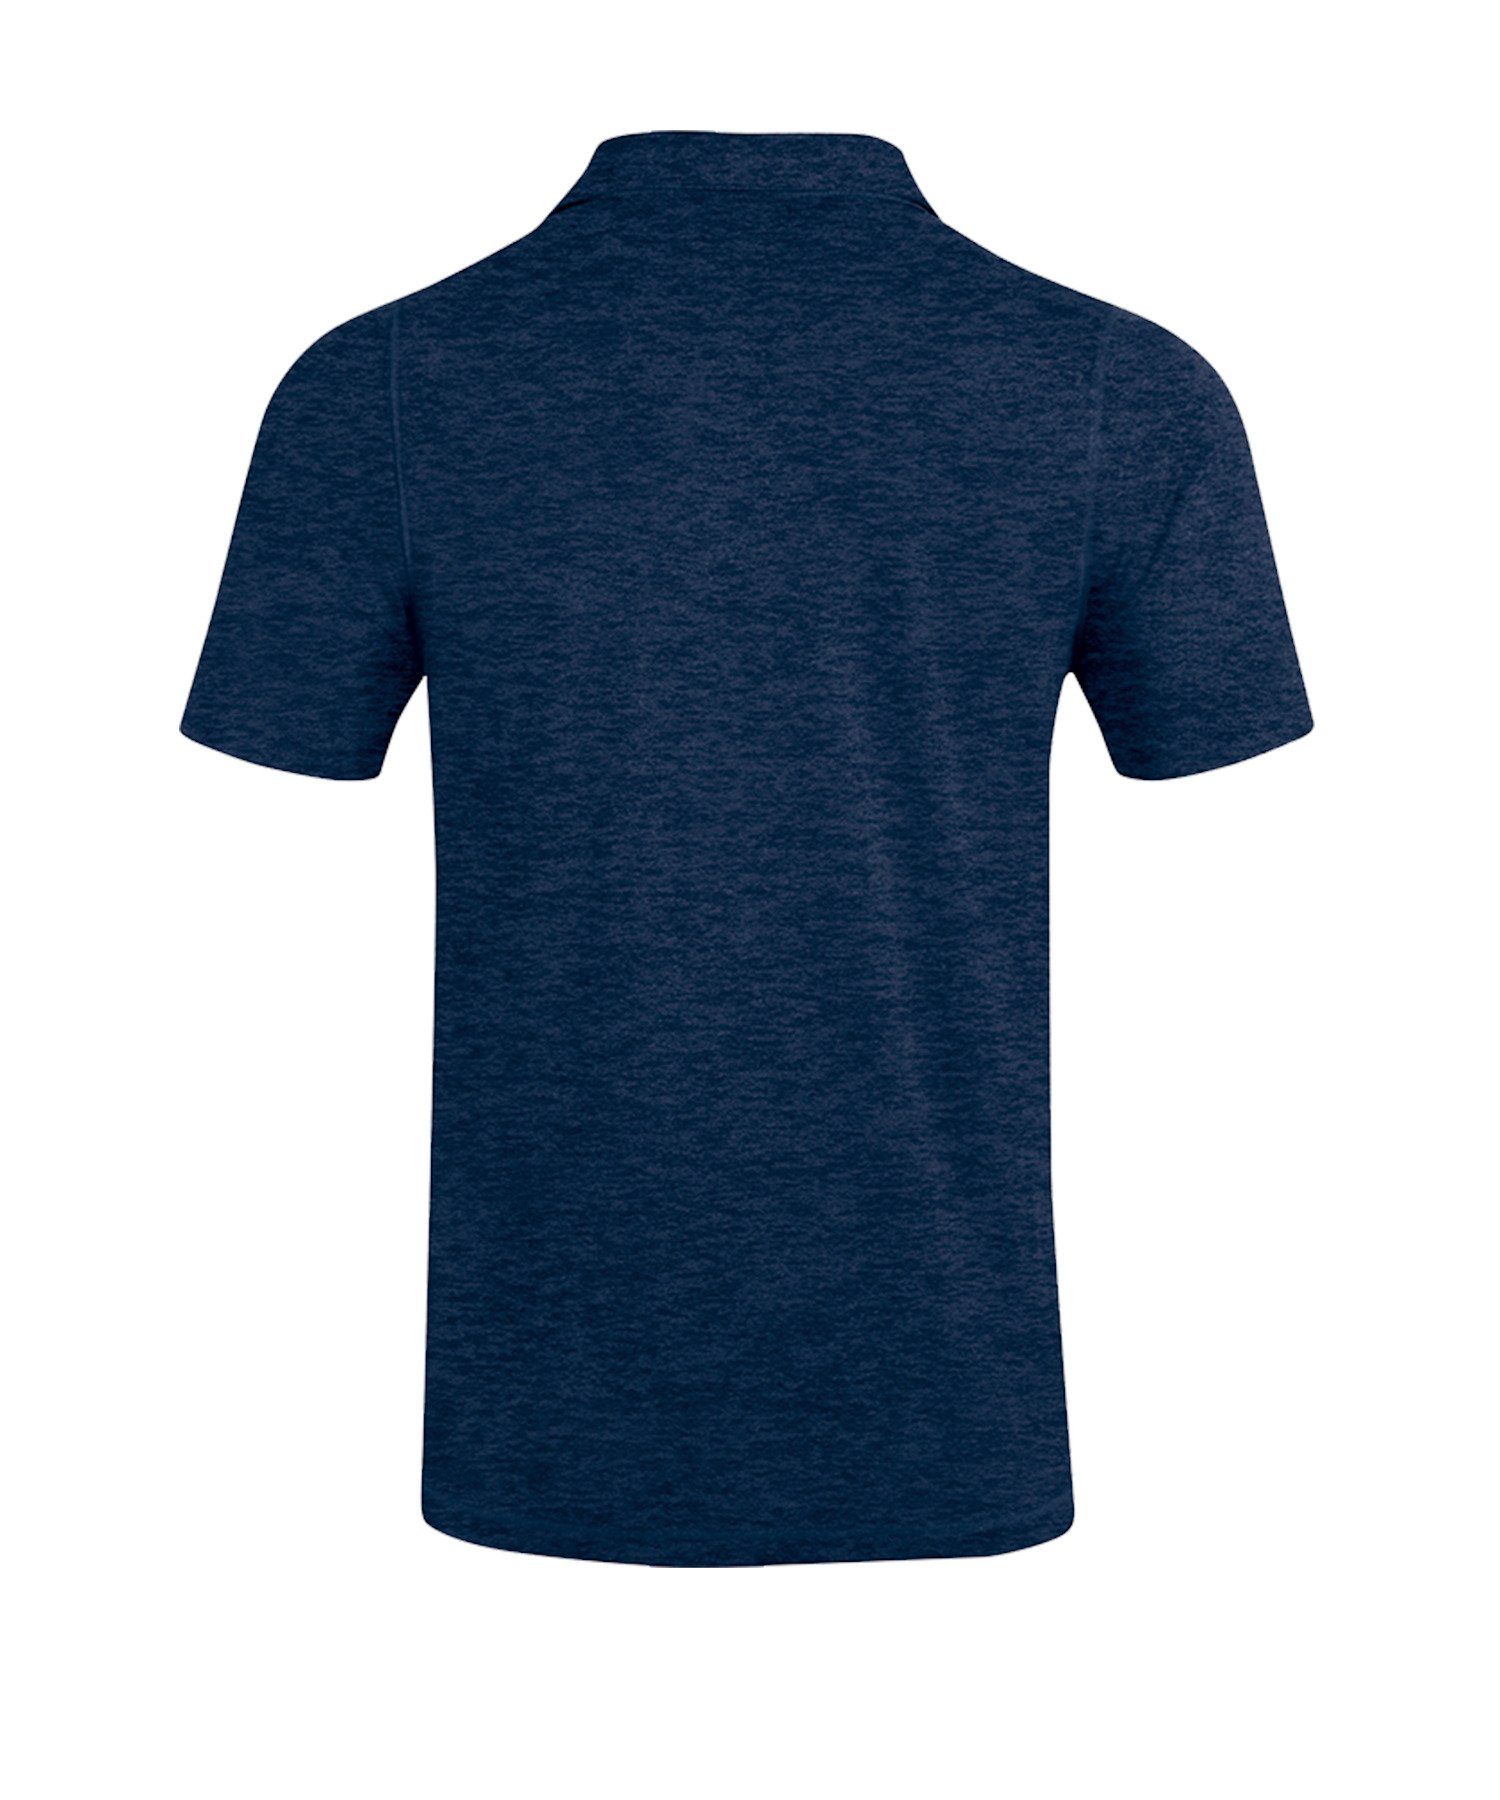 Basics T-Shirt Poloshirt Blau default Premium Jako